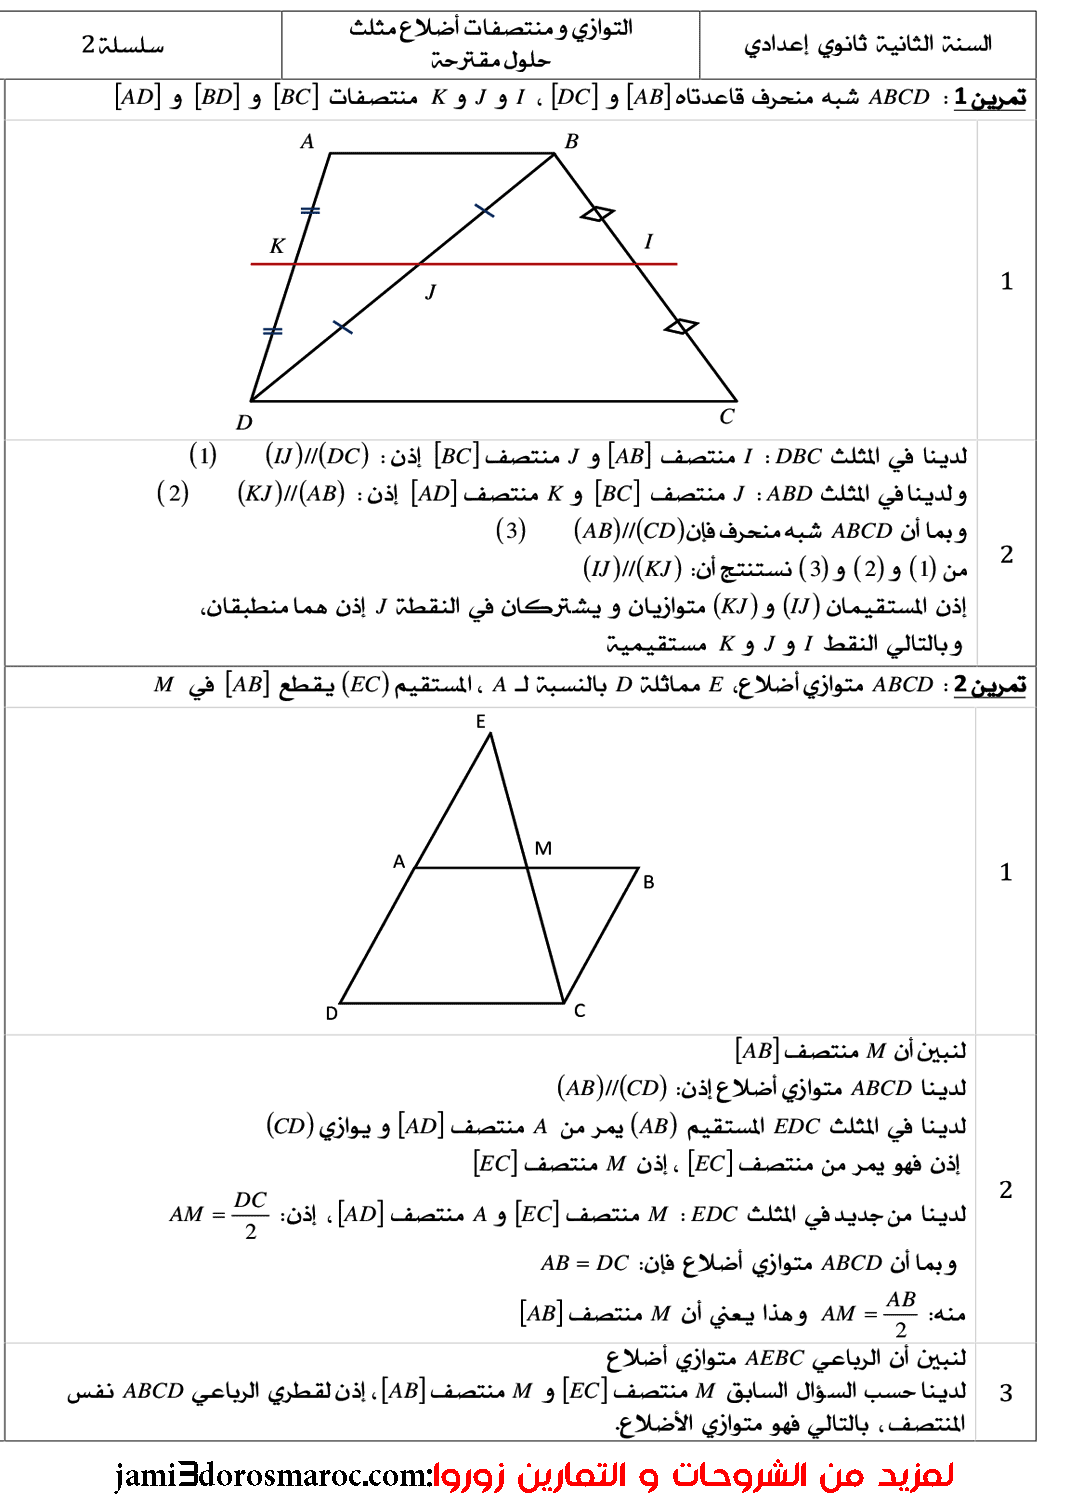 سلسلة تمارين في درس التوازي ومنتصفات أضلاع مثلث الثانية إعدادي